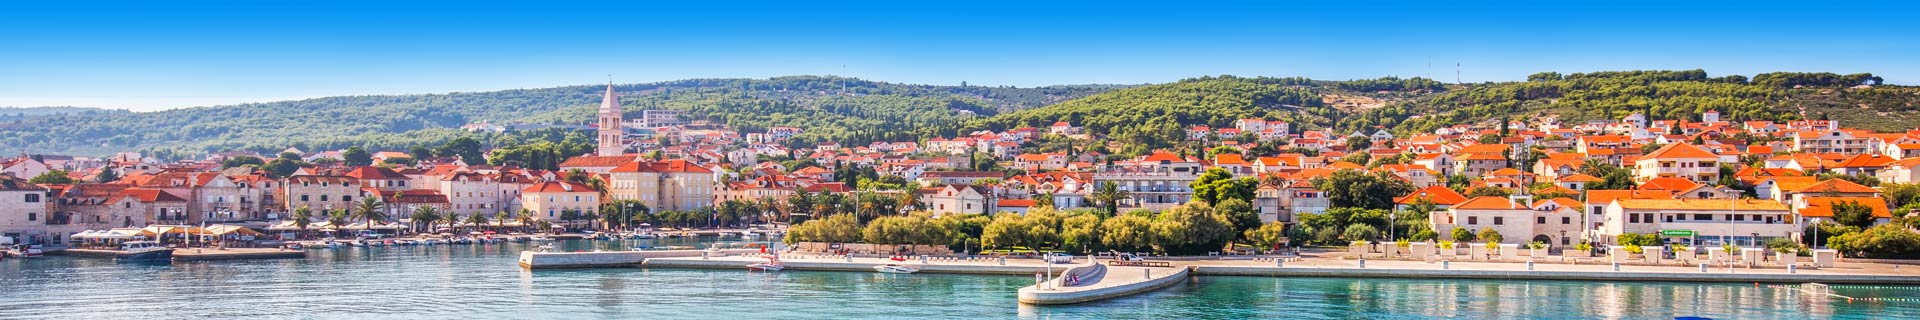 Uitzicht over een stad in Kroatie